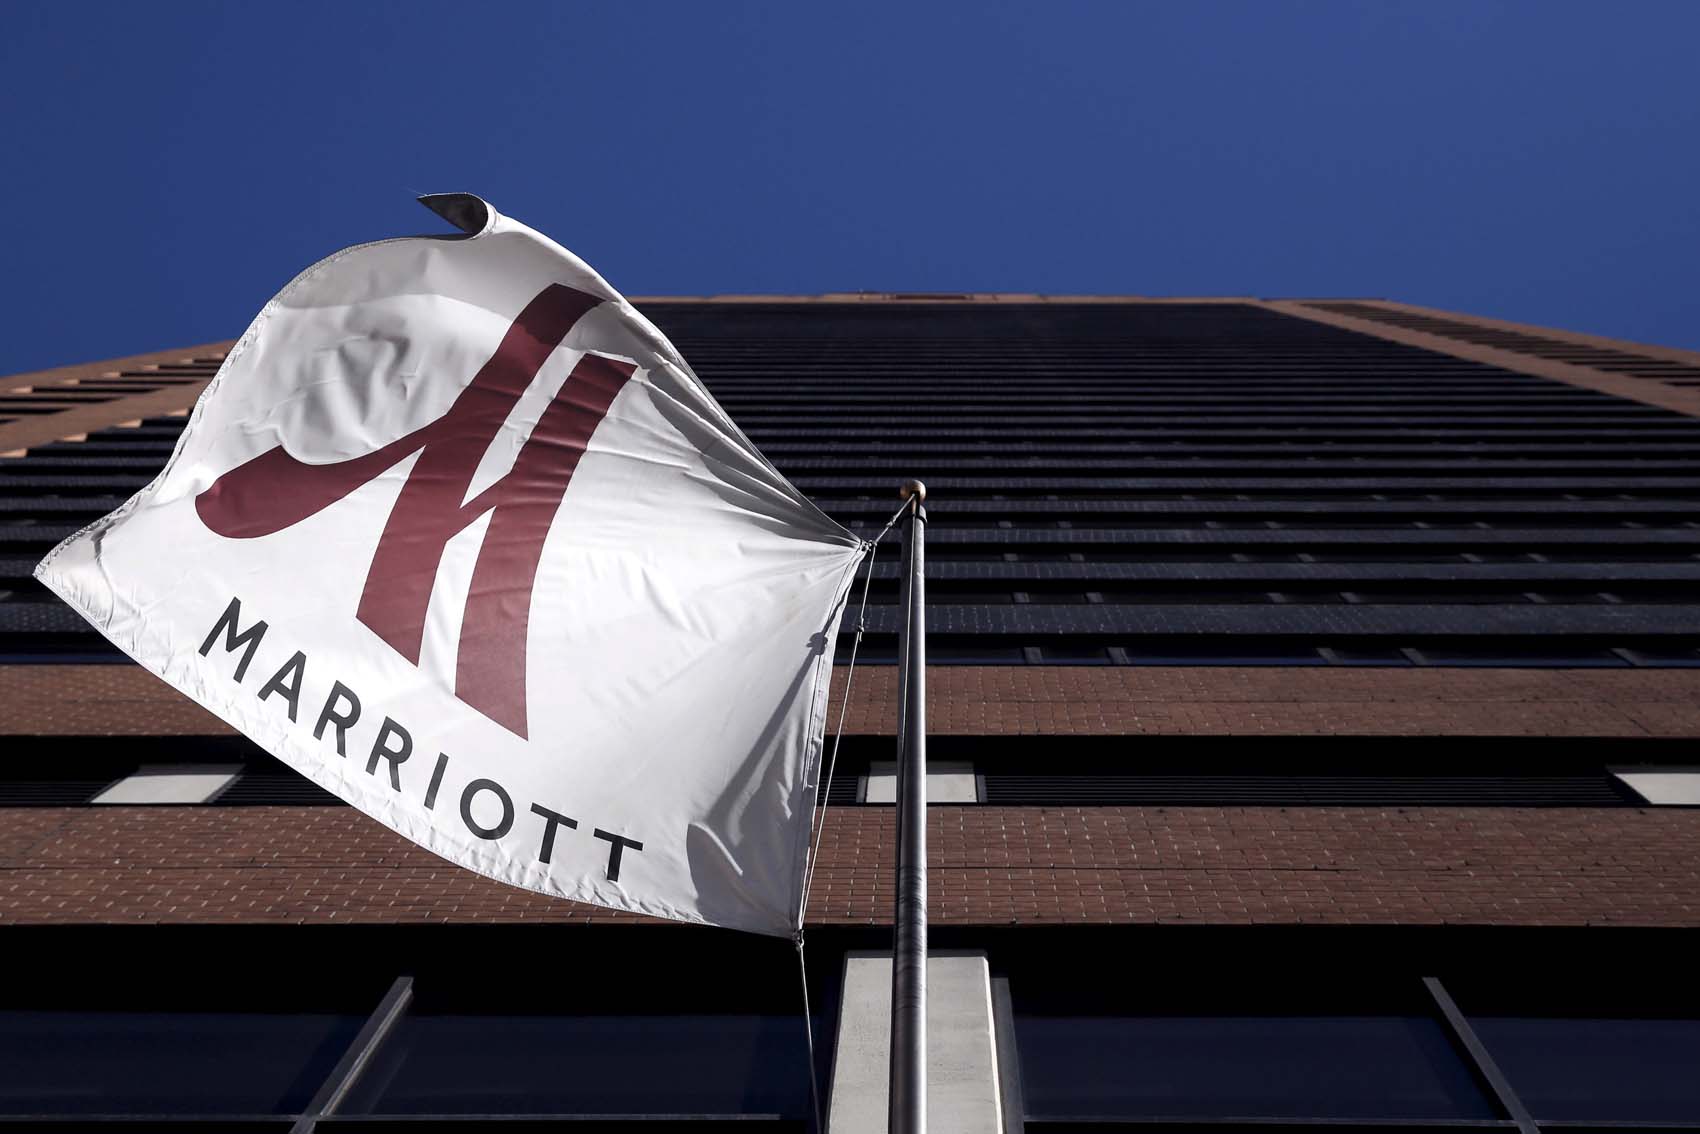 Hoteles Marriott anuncia hackeo que podría afectar a unos 500 millones de clientes